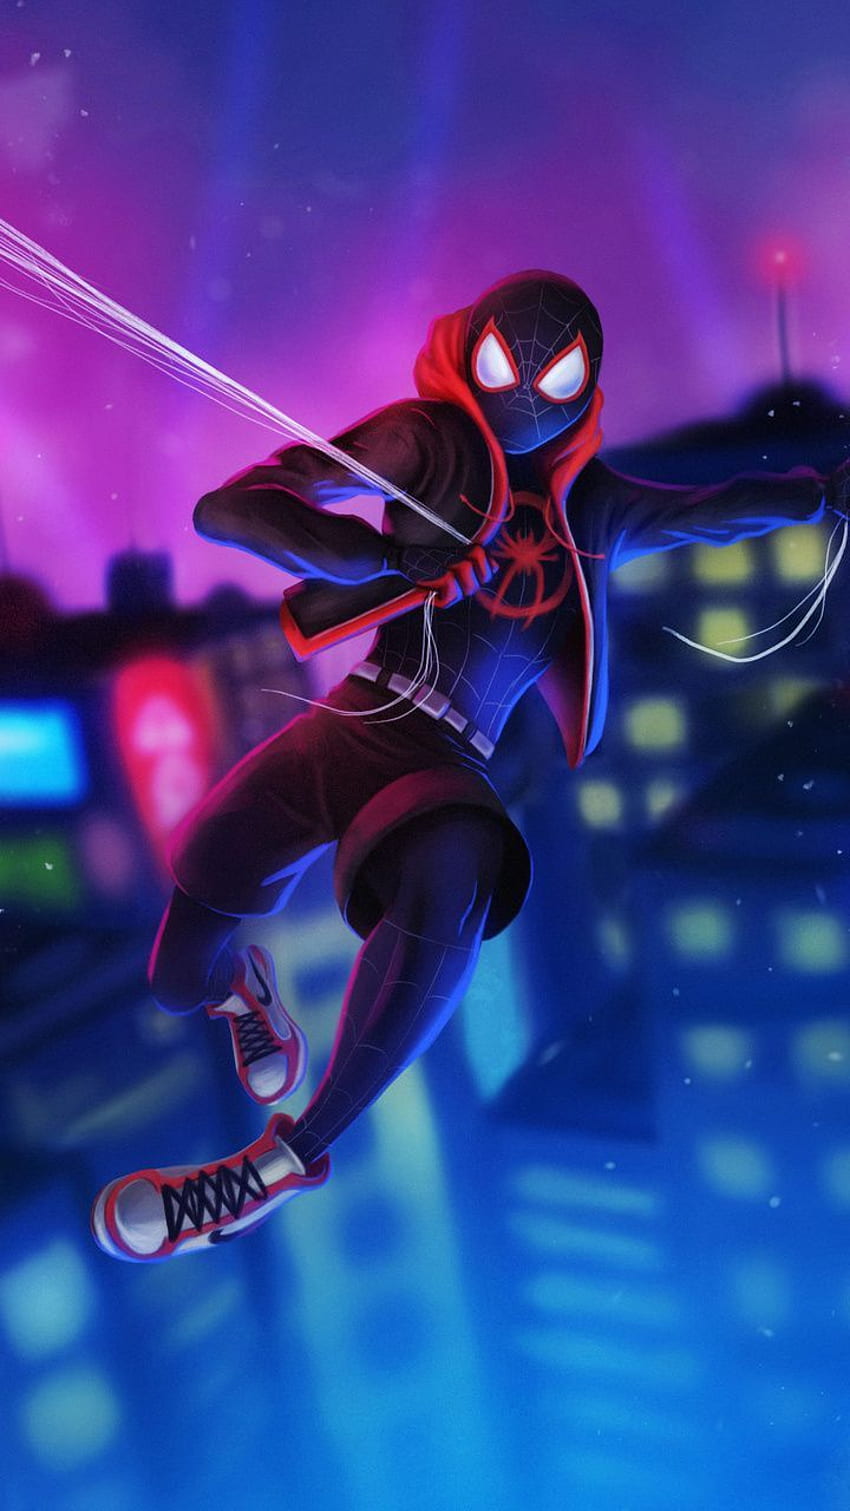 온라인으로 만화 보기: 온라인으로 애니메이션을 볼 수 있는 상위 10개 사이트. 내 블로그. 스파이더맨 만화, 스파이더맨 삽화, Marvel comics, Cartoon Spider Man HD 전화 배경 화면